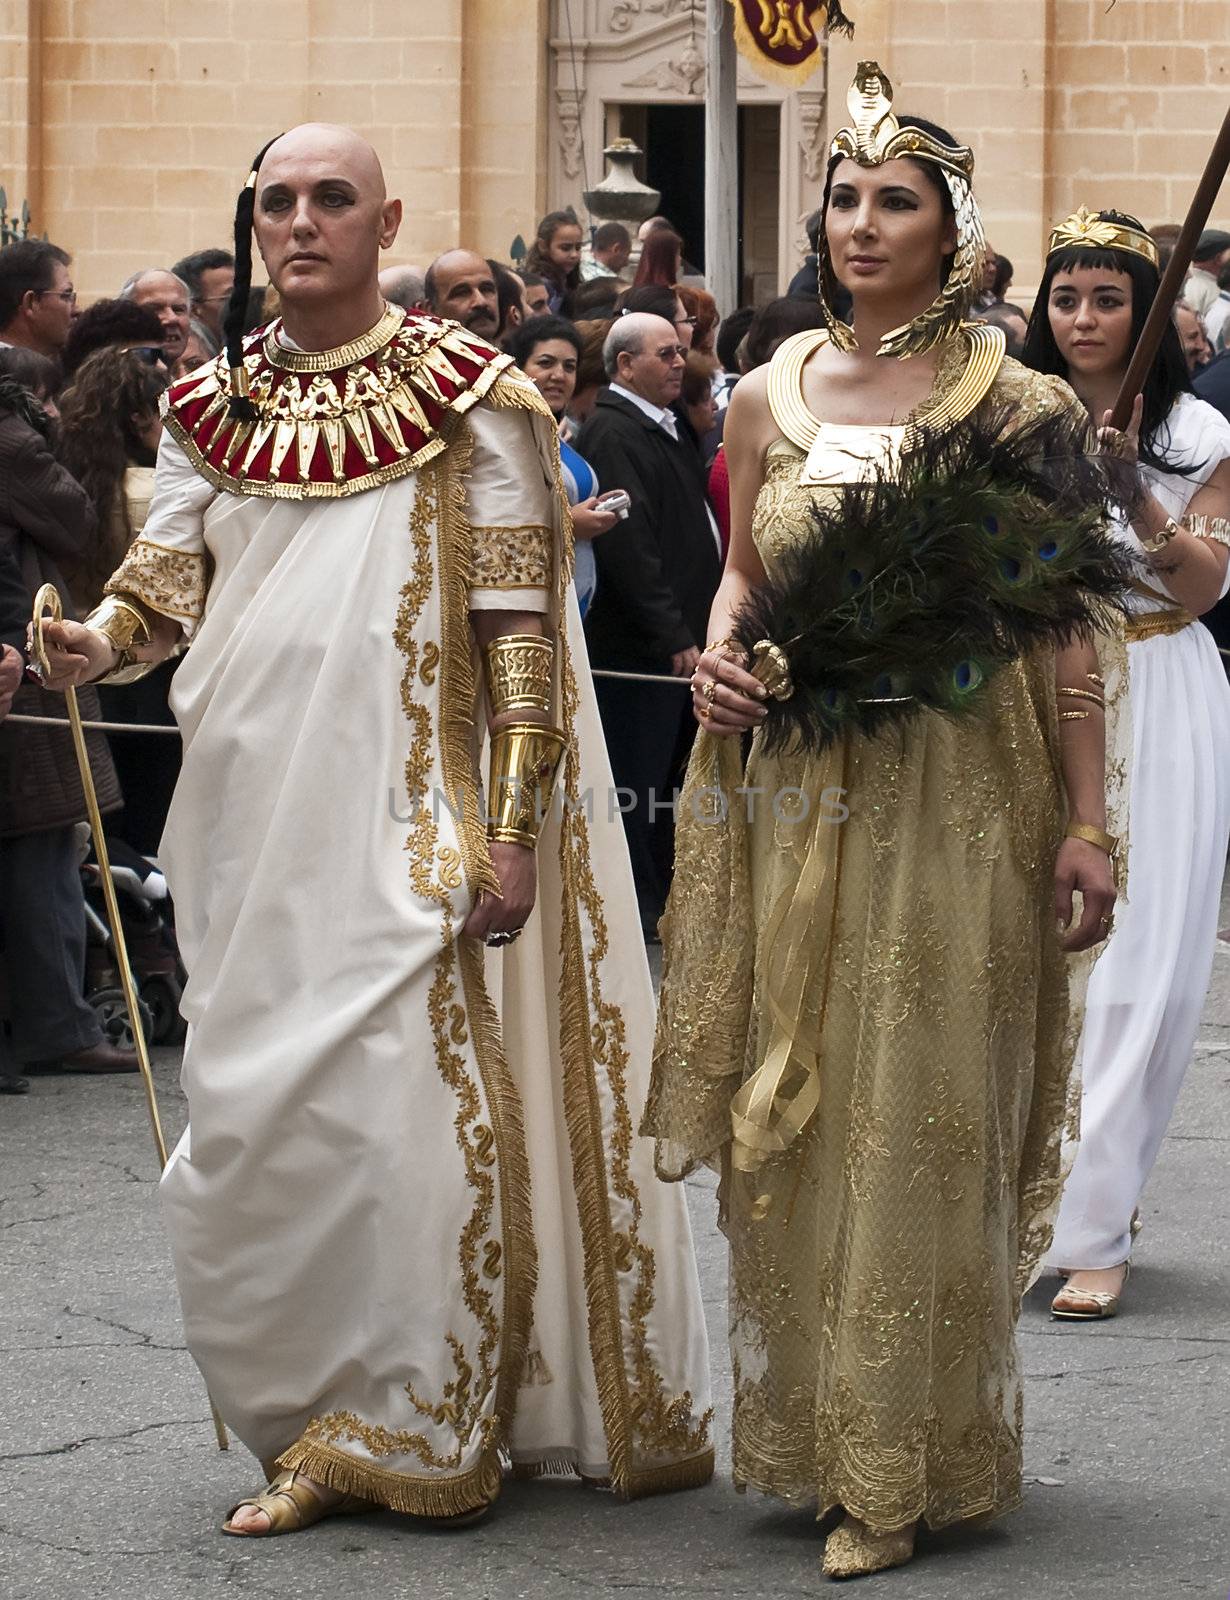 Cleopatra by PhotoWorks